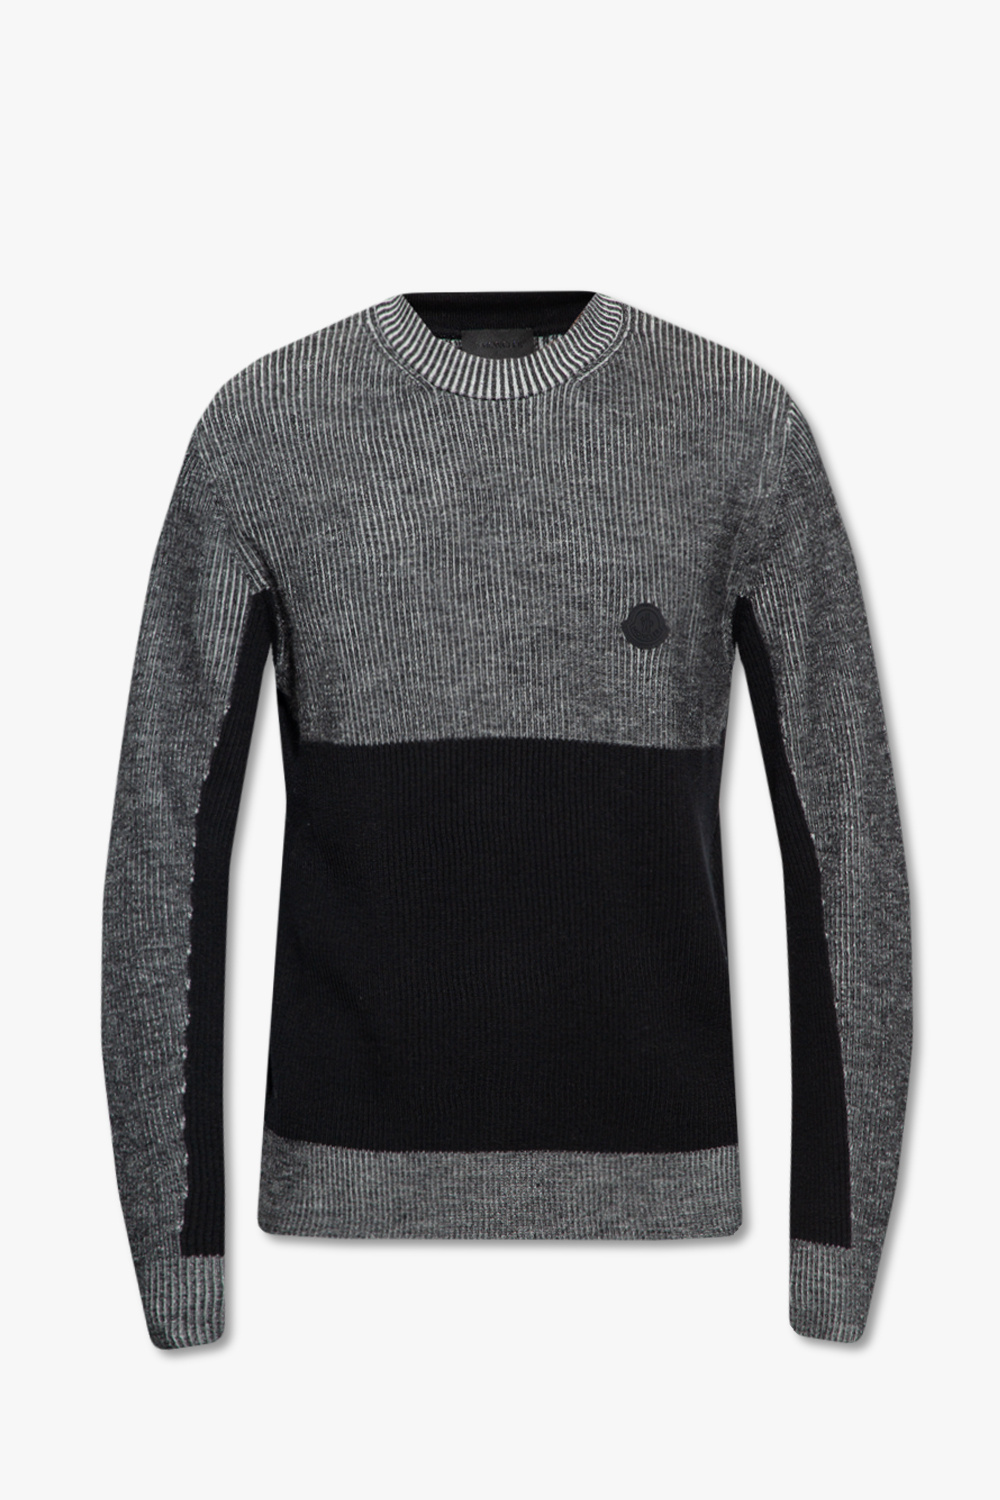 Moncler Kovan sweater